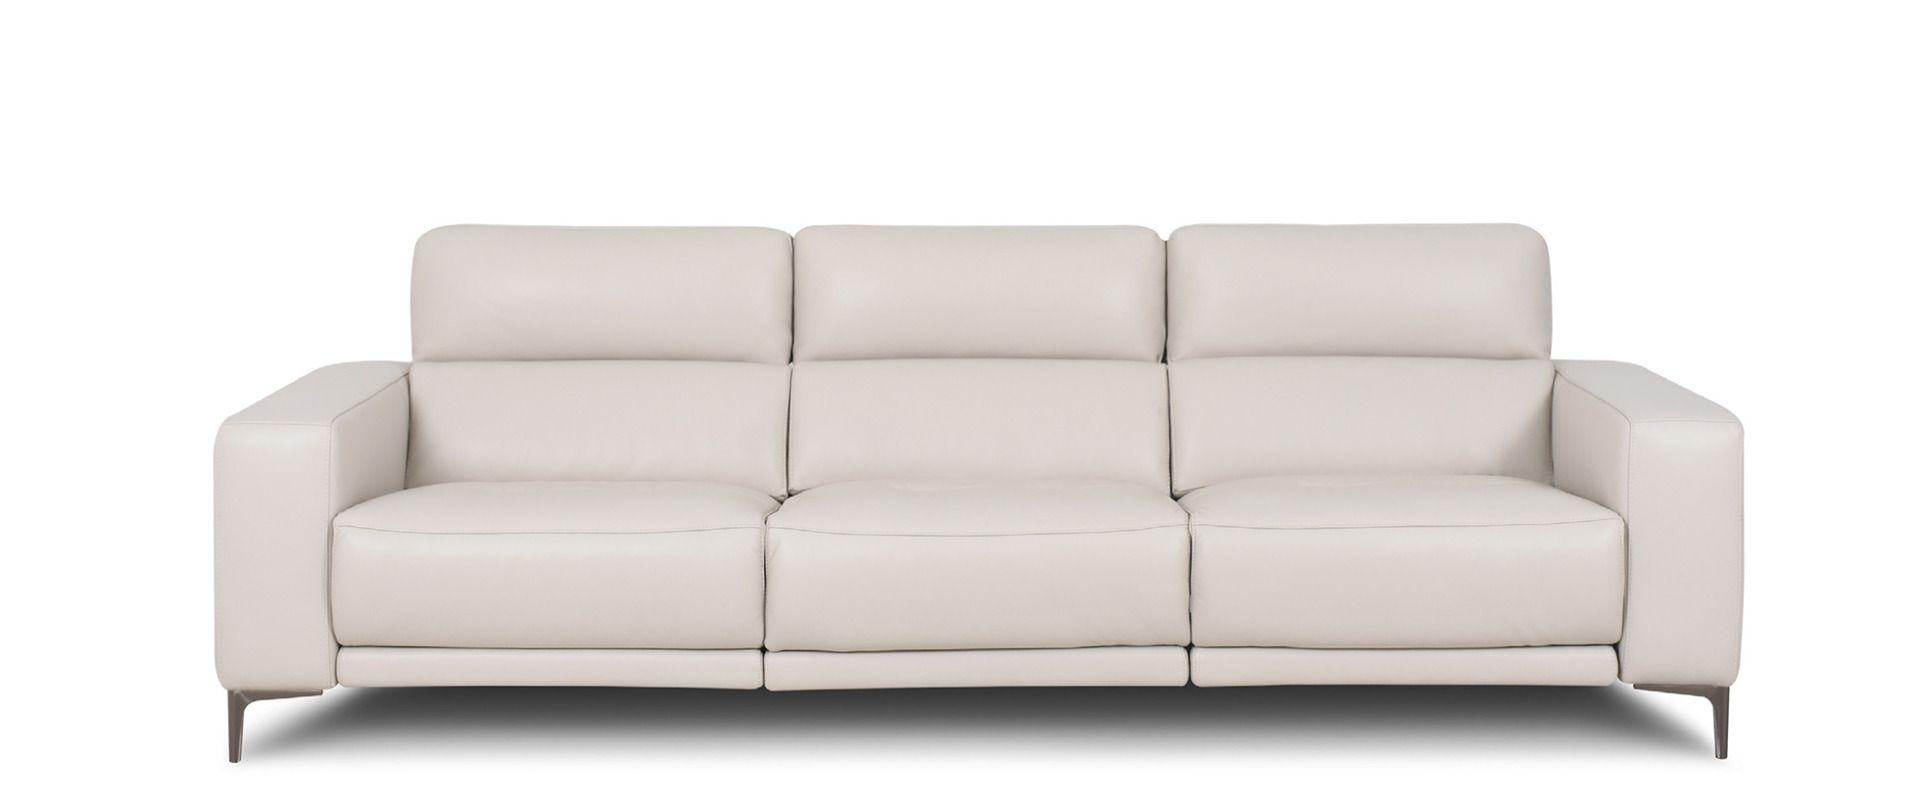 

    
EK-LH169 American Eagle Furniture Sectional Sofa
